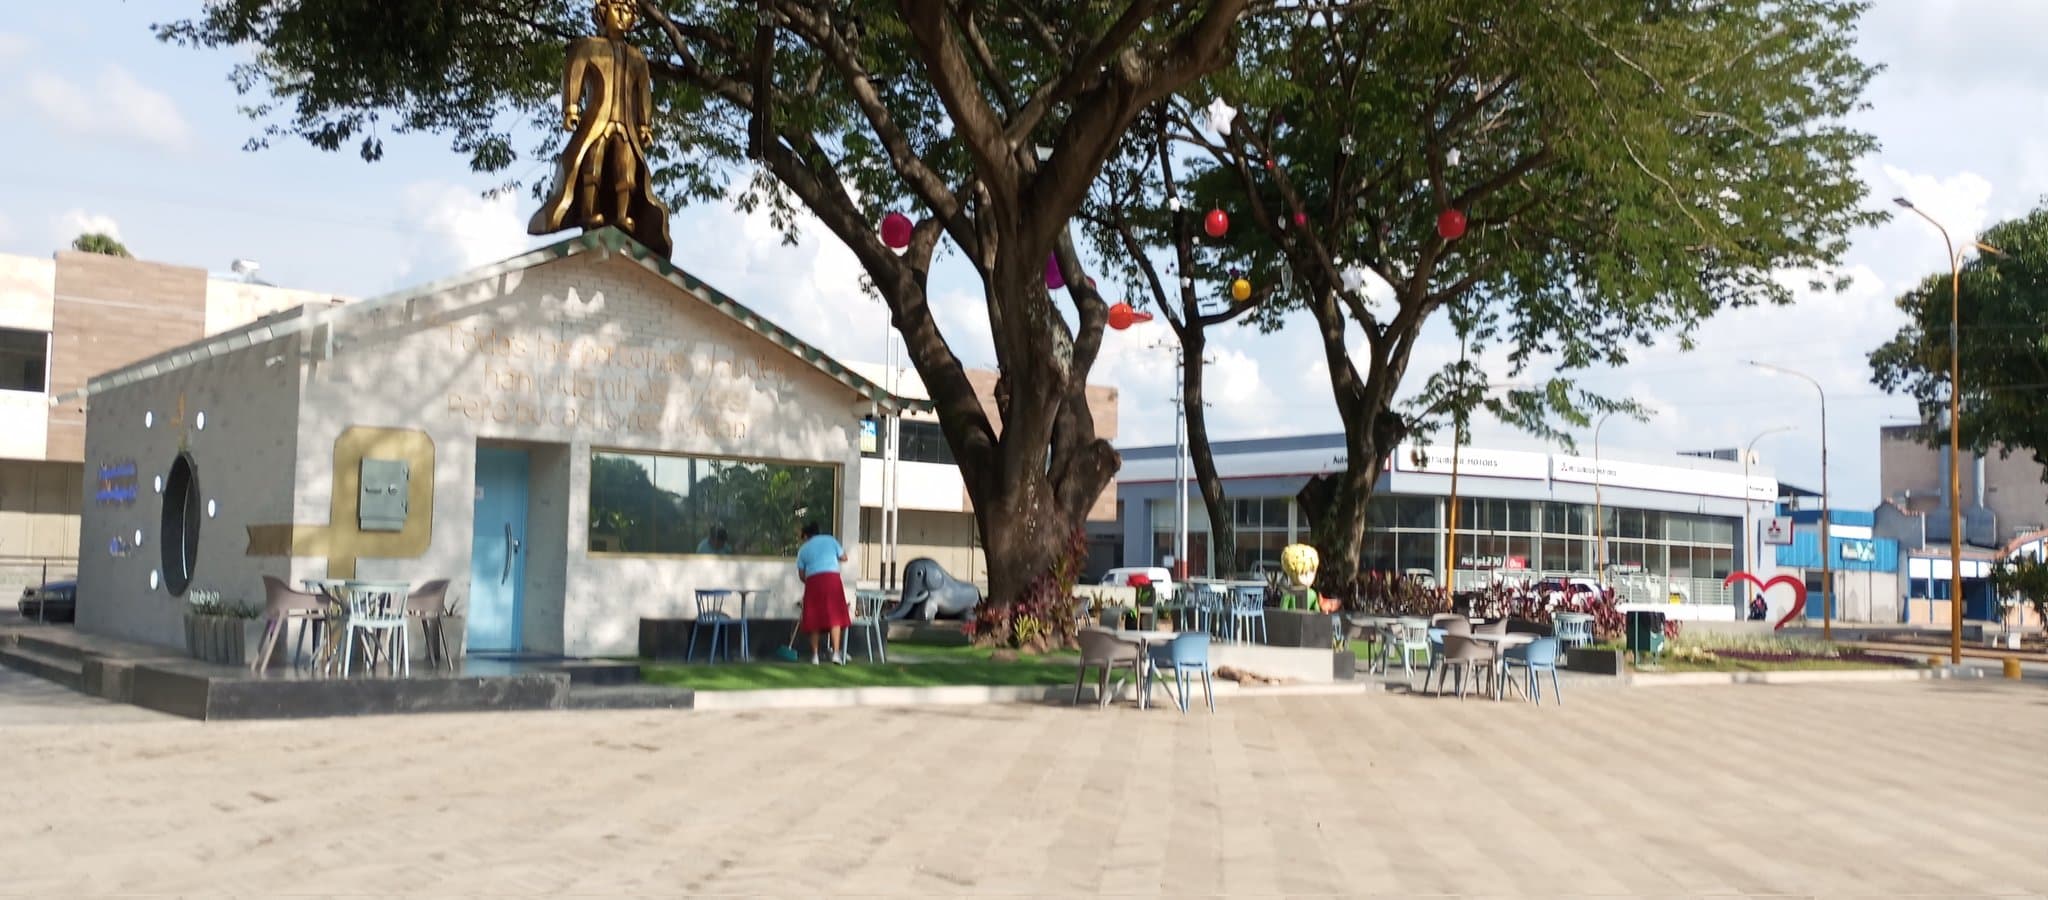 El Principito está en el Museo de la Cultura de Carabobo - El Principito está en el Museo de la Cultura de Carabobo